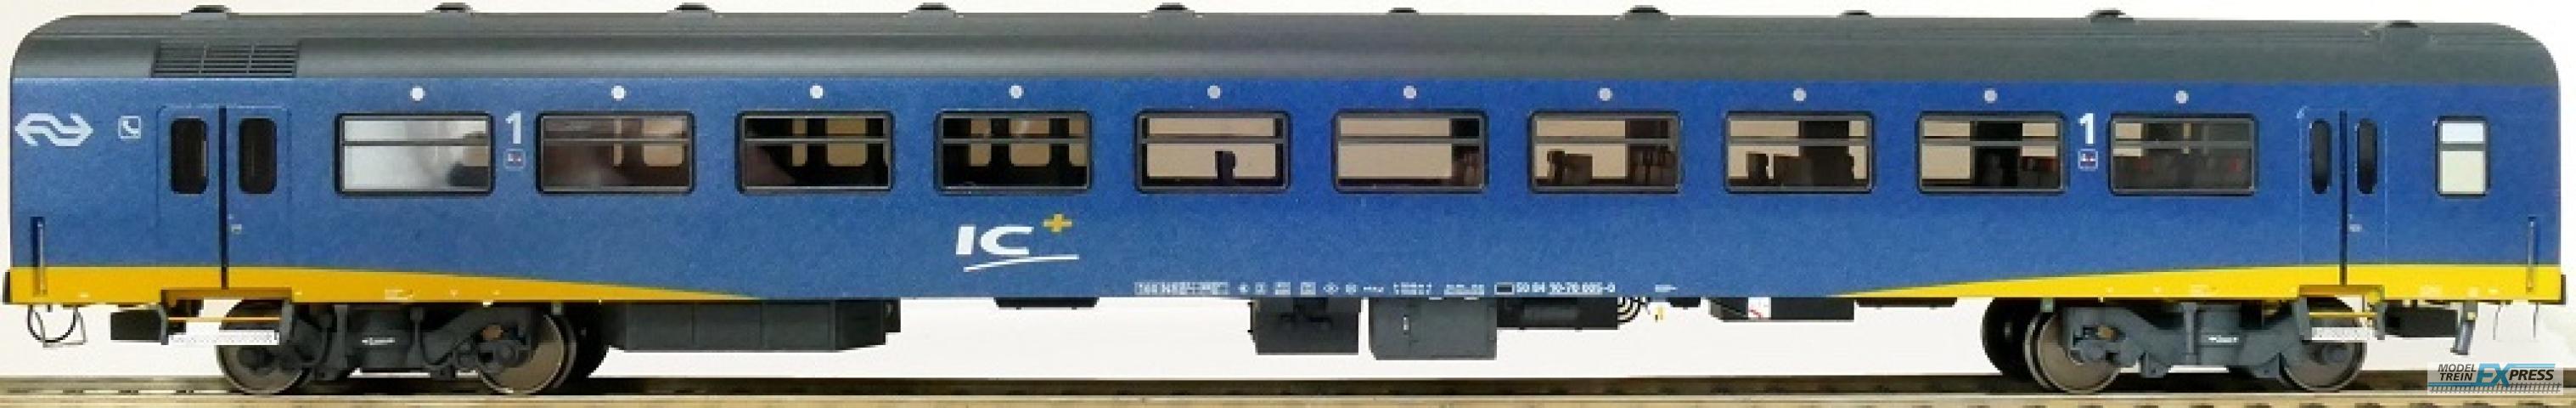 Exact-train 11182 NS ICR Plus Reisezugwagen A ( Farbe Blau) mit Beleuchtung und Figuren, Ep. IV